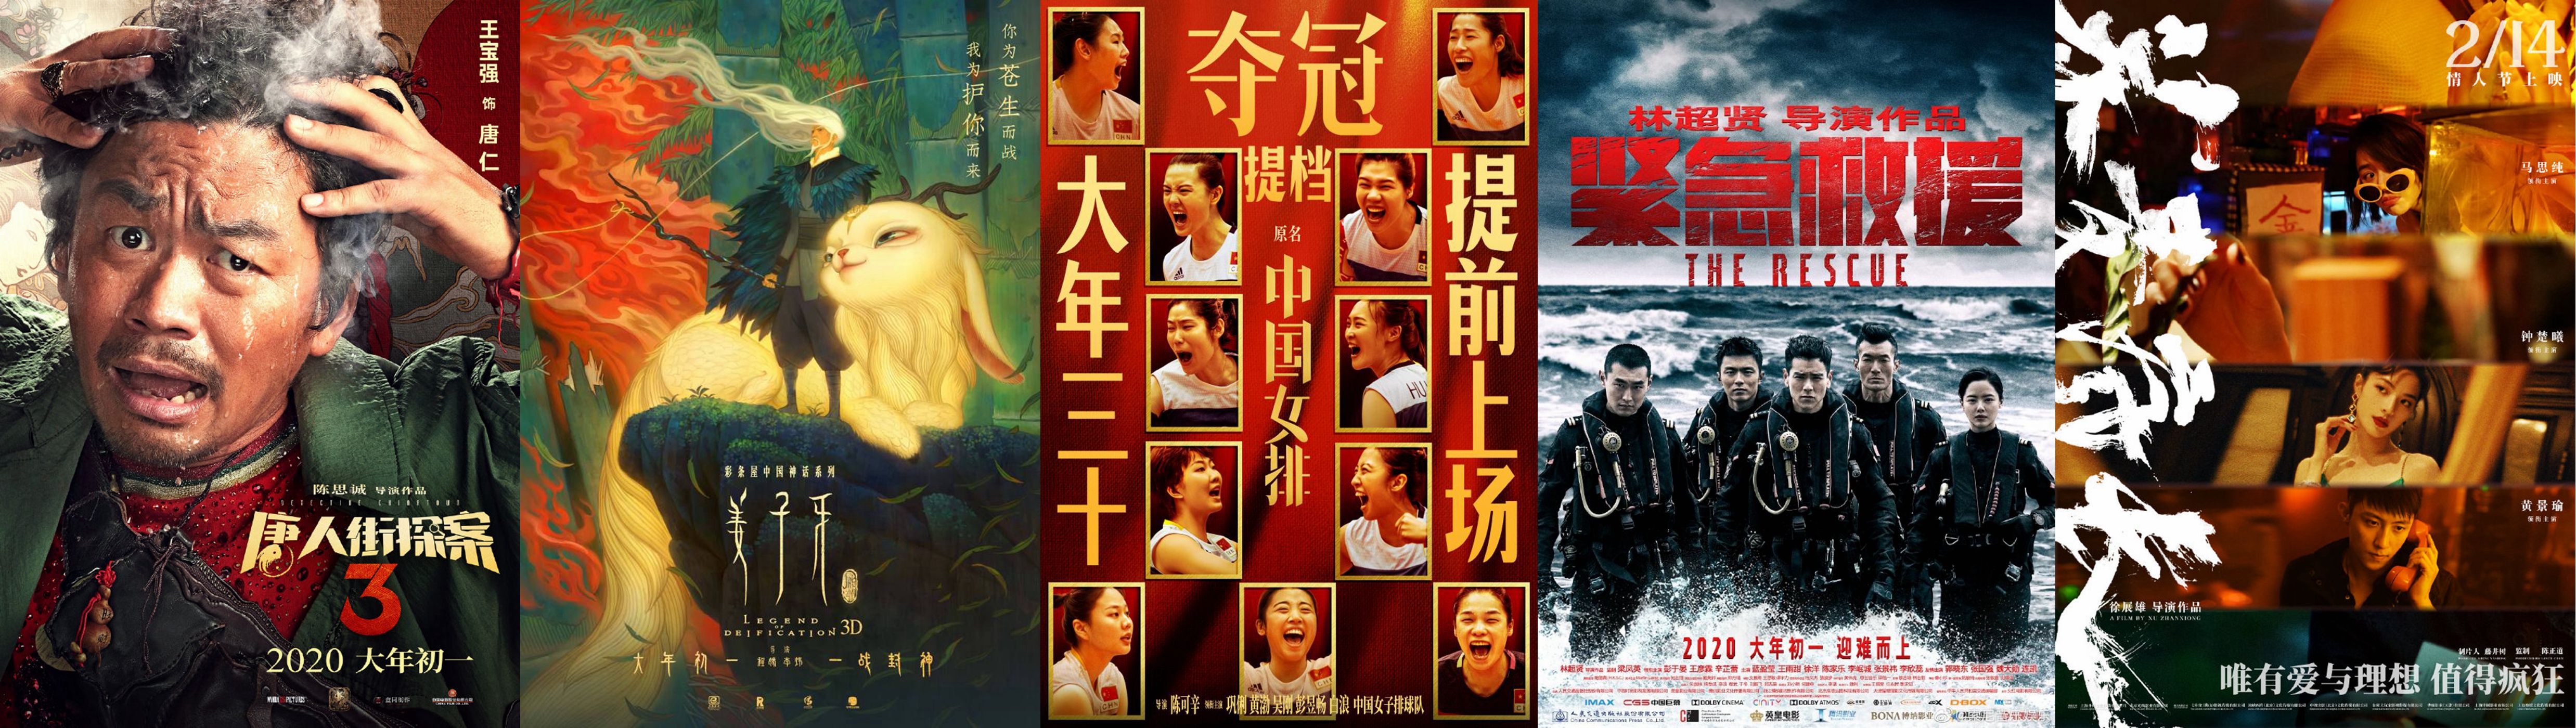 期待影院相逢 2020年值得一看的华语电影盘点（一）